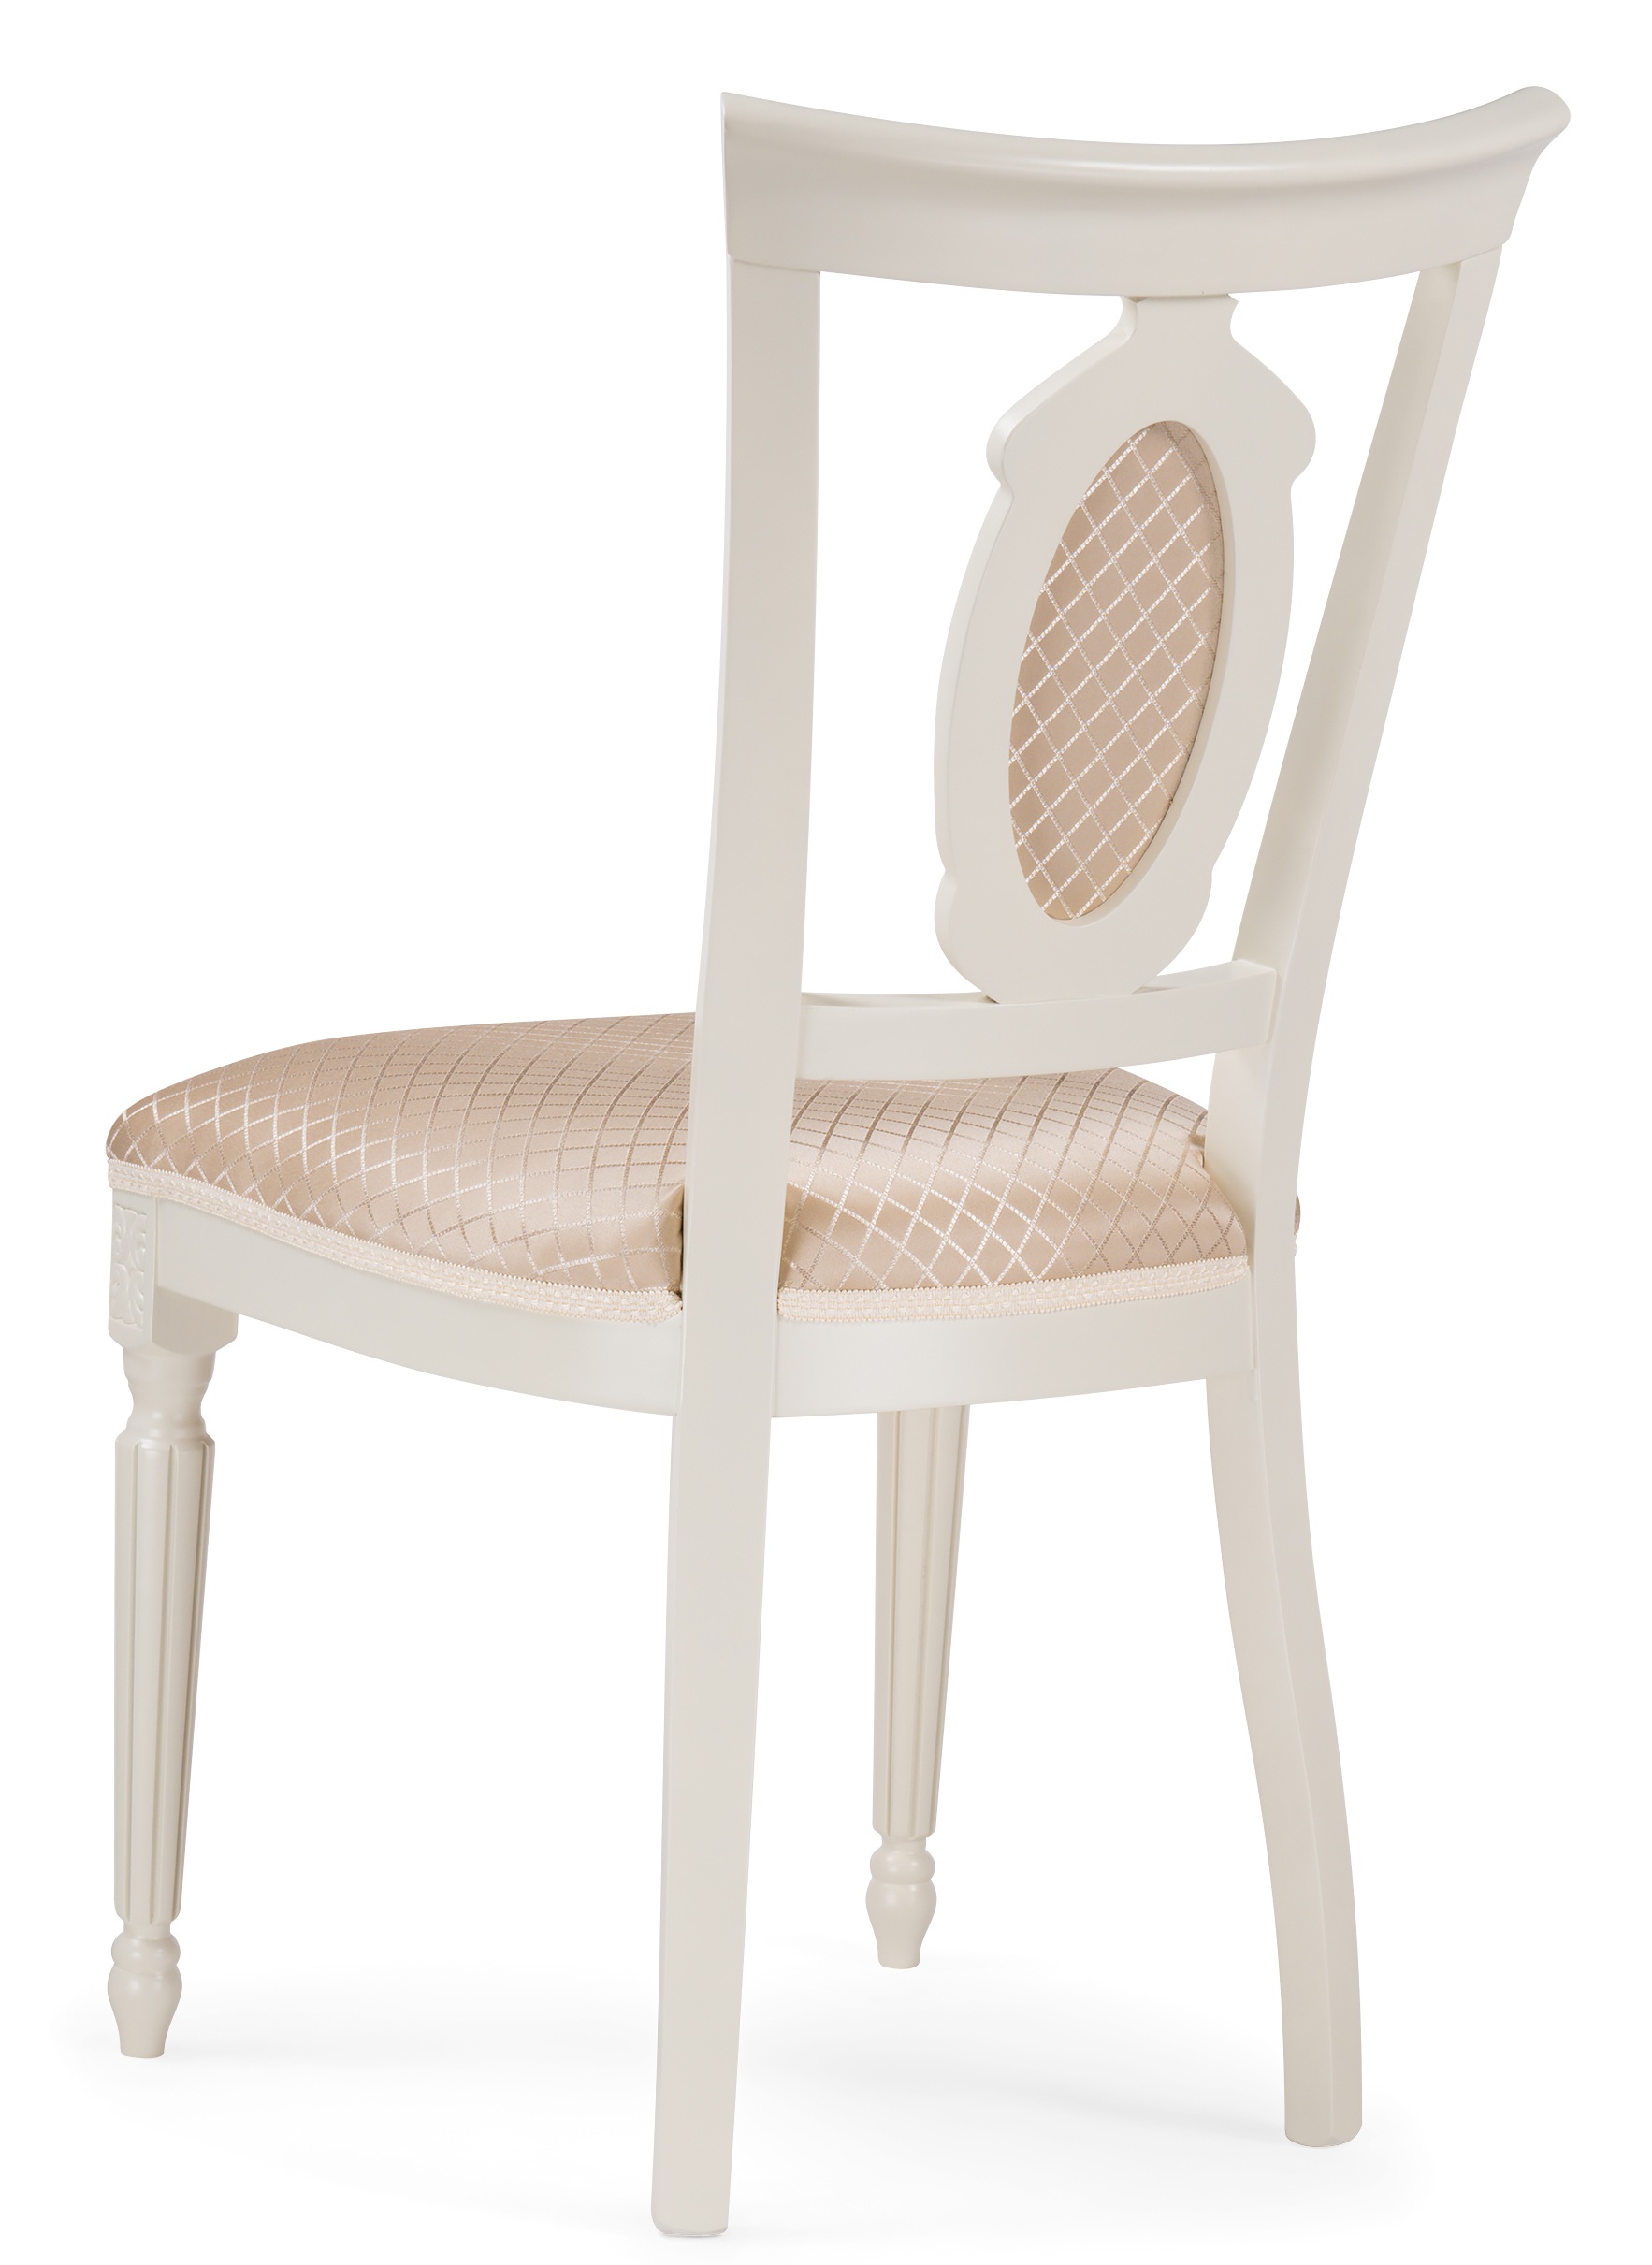 Деревянный стул Лино молочный с мягкой круглой вставкой на спинке (арт. М3672)